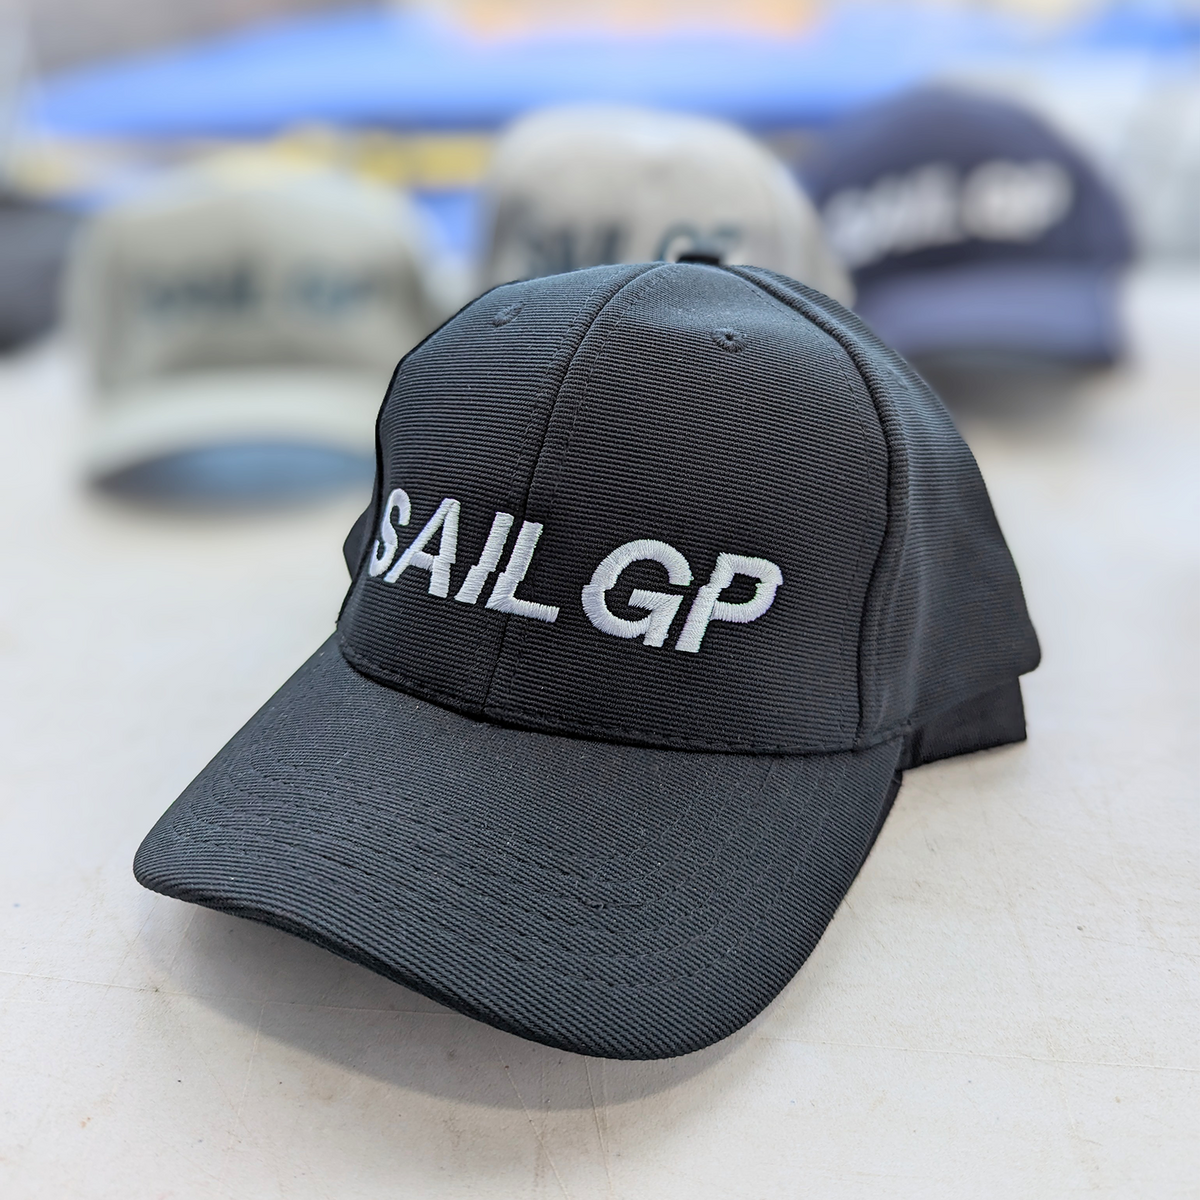 SailGP Cap Ottoman Twill Black Cap